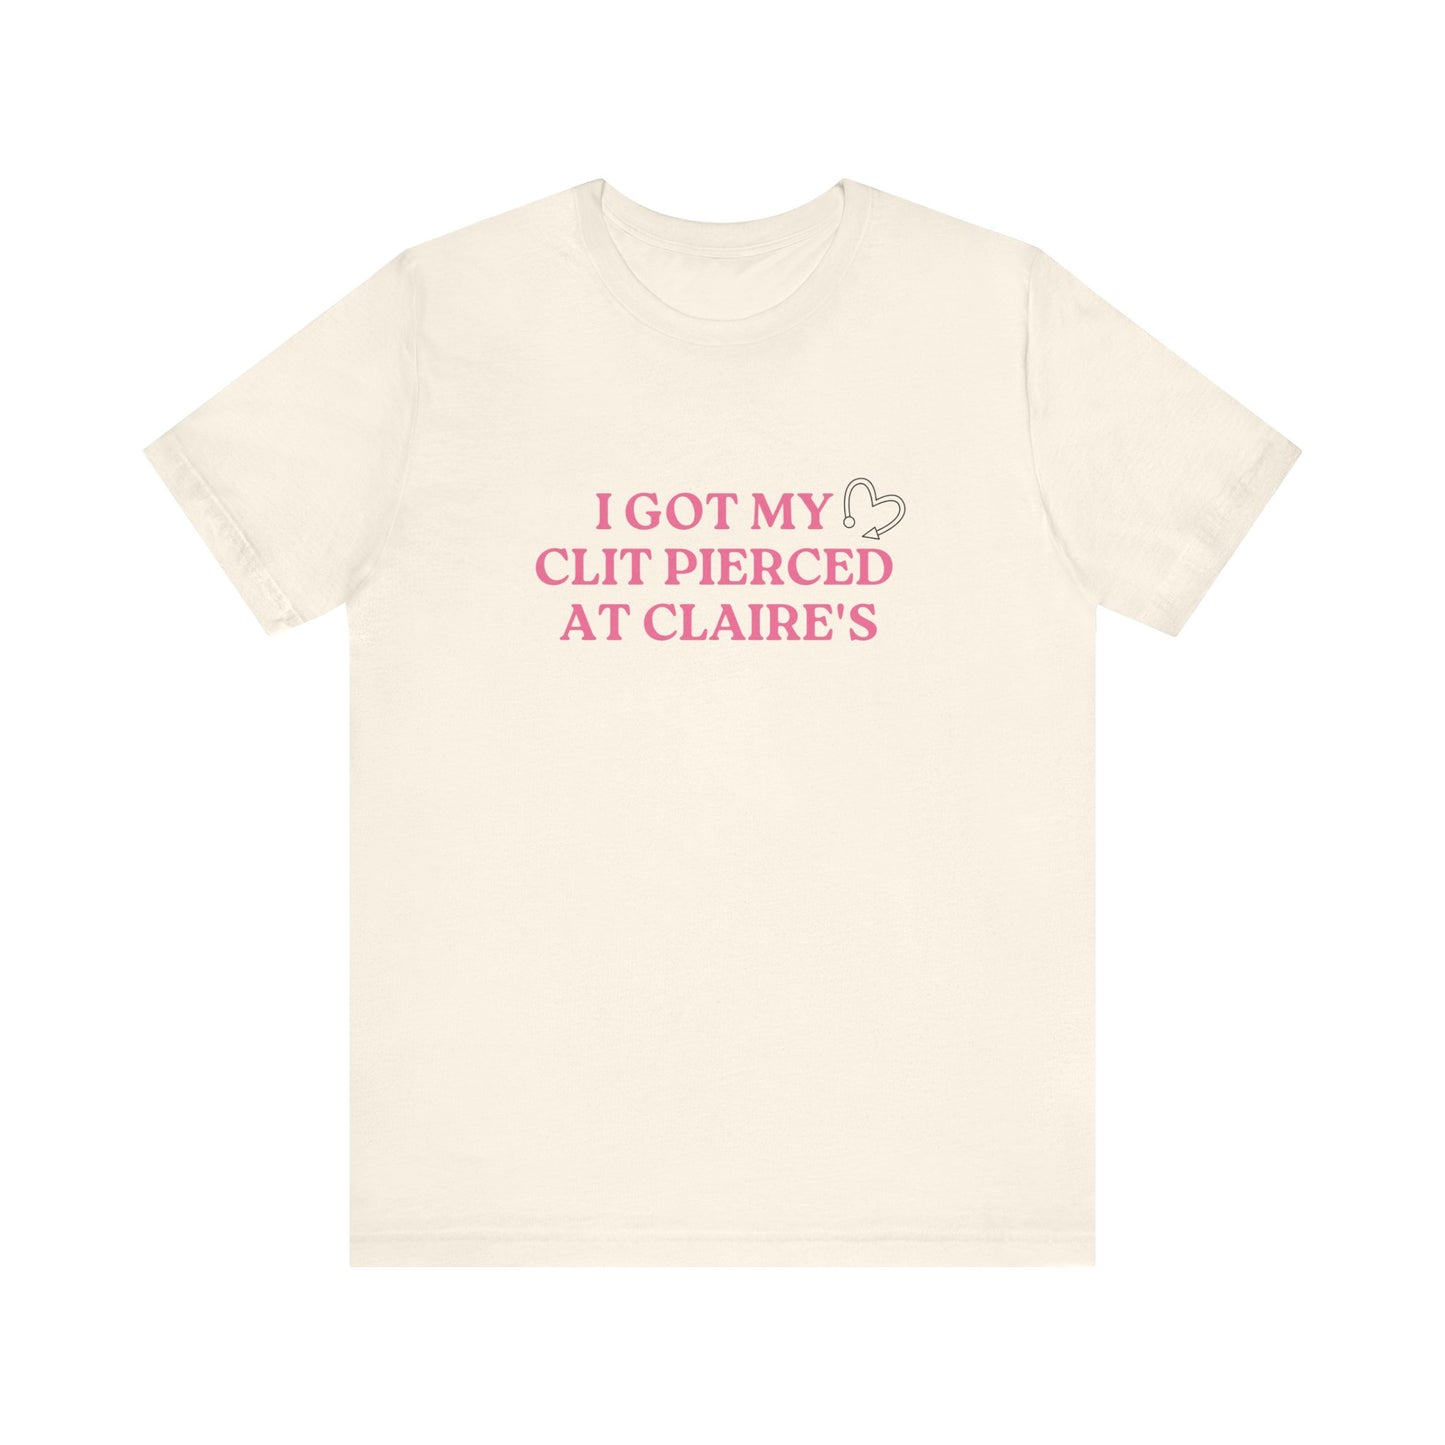 Got My Clit Pierced at Claires - Unisex T-Shirt